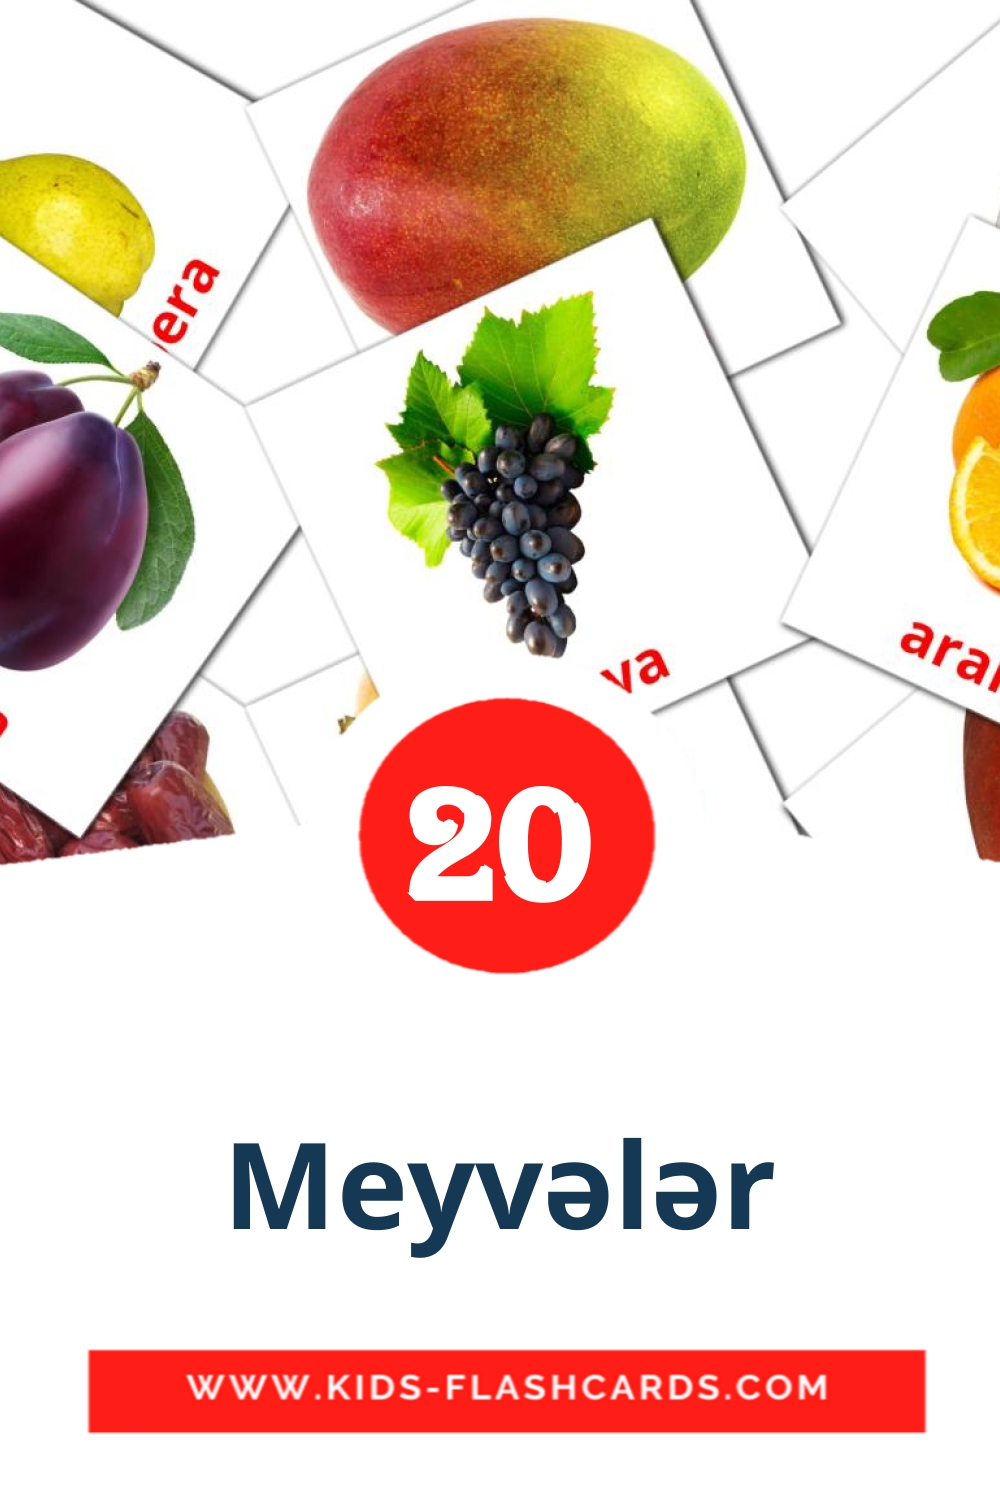 20 Meyvələr Picture Cards for Kindergarden in azerbaijani